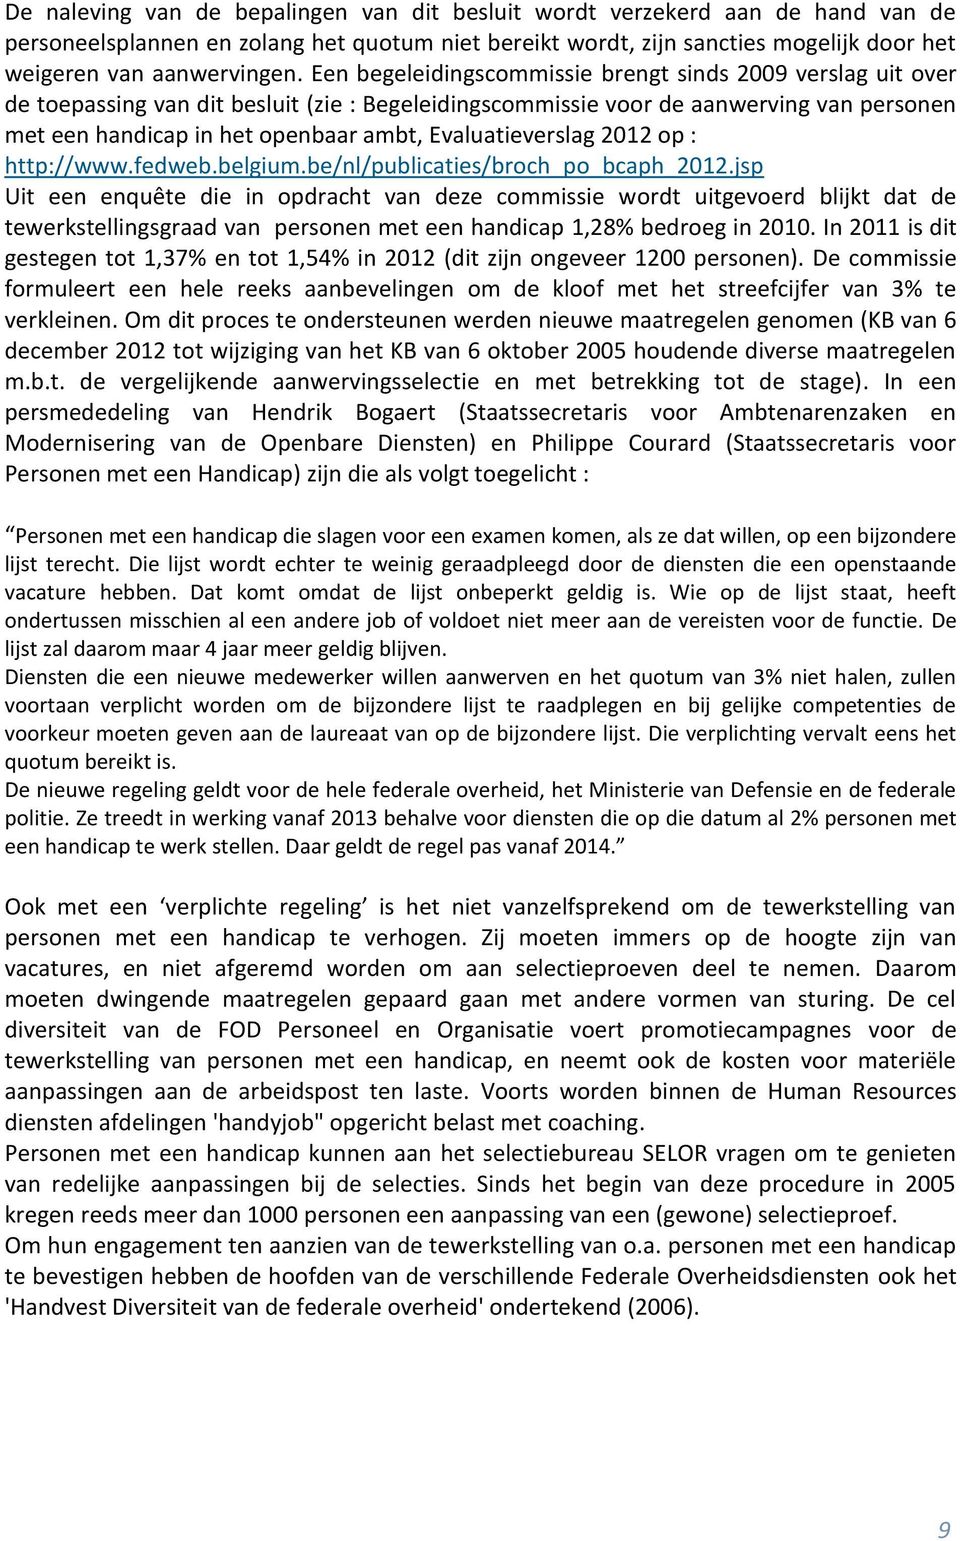 Evaluatieverslag 2012 op : http://www.fedweb.belgium.be/nl/publicaties/broch_po_bcaph_2012.